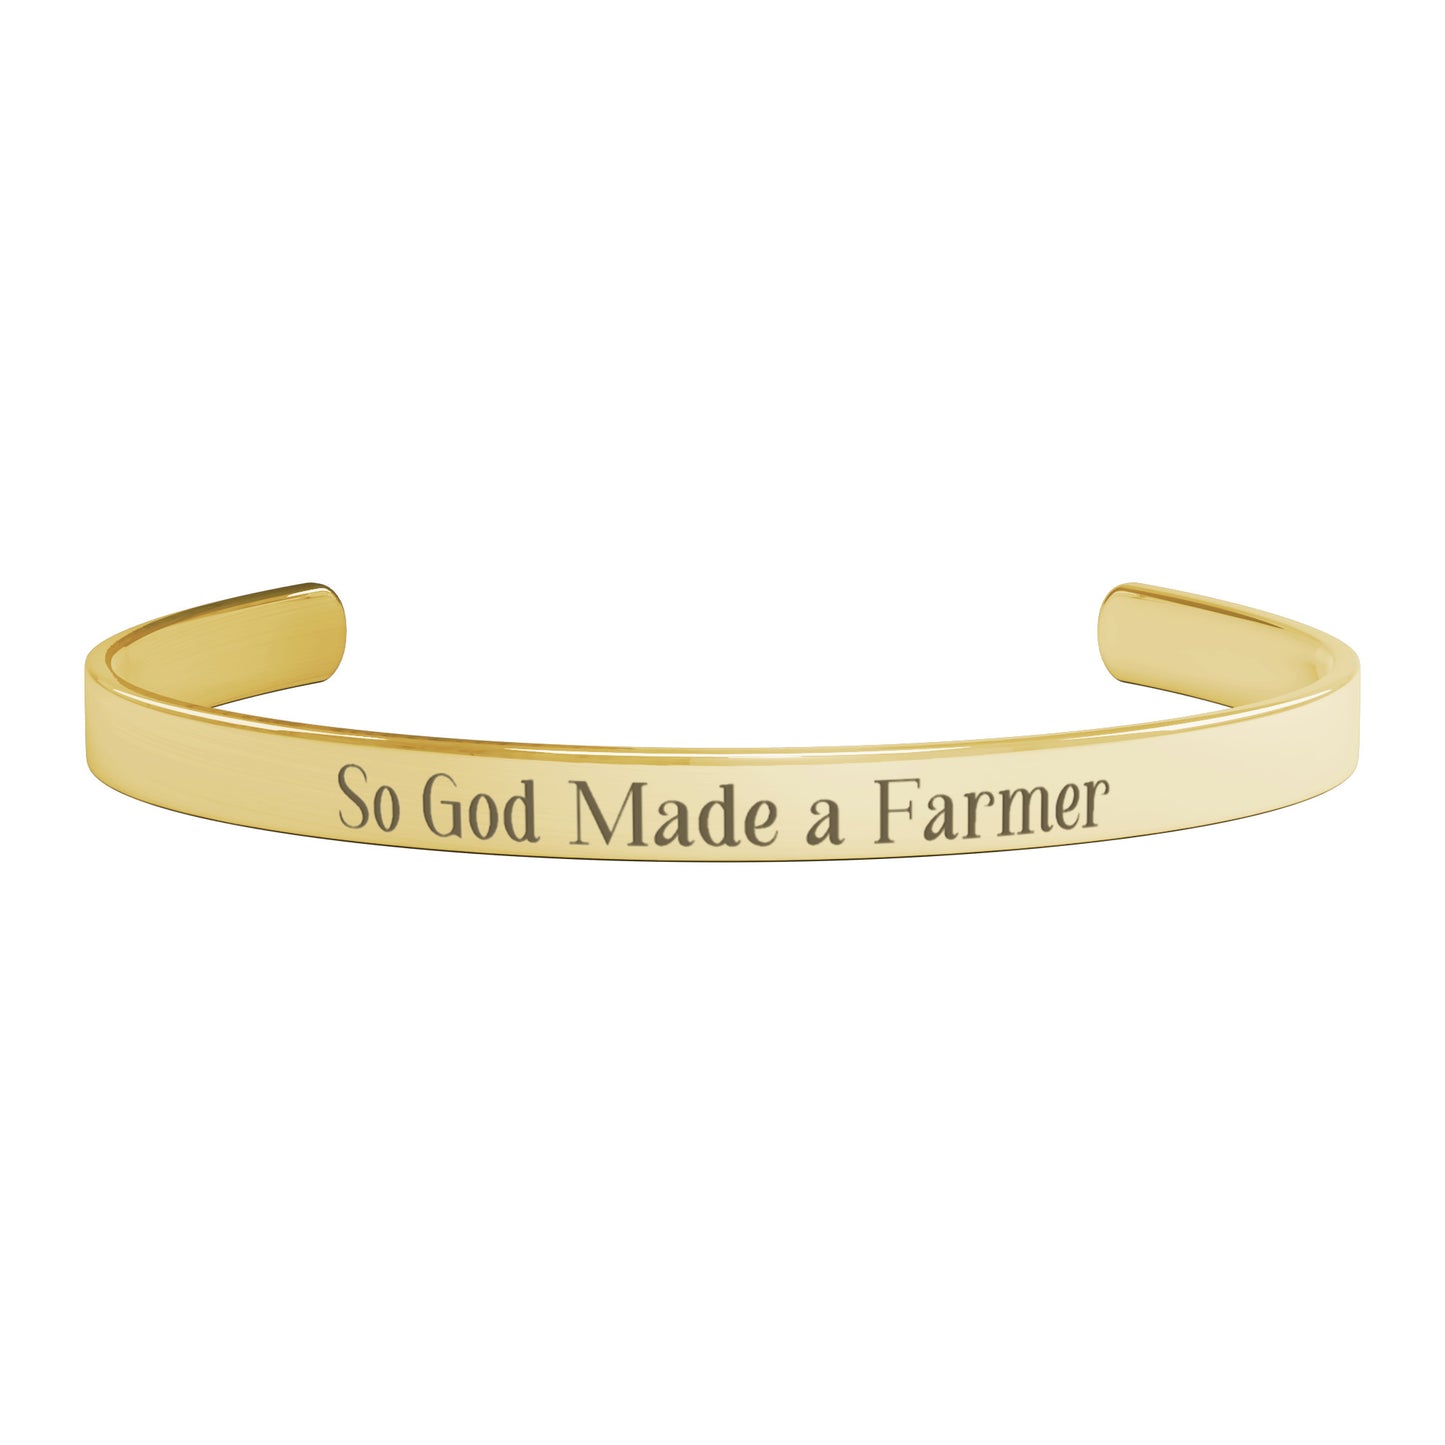 So God Made a Farmer Cuff Bracelet - FREE SHIPPING